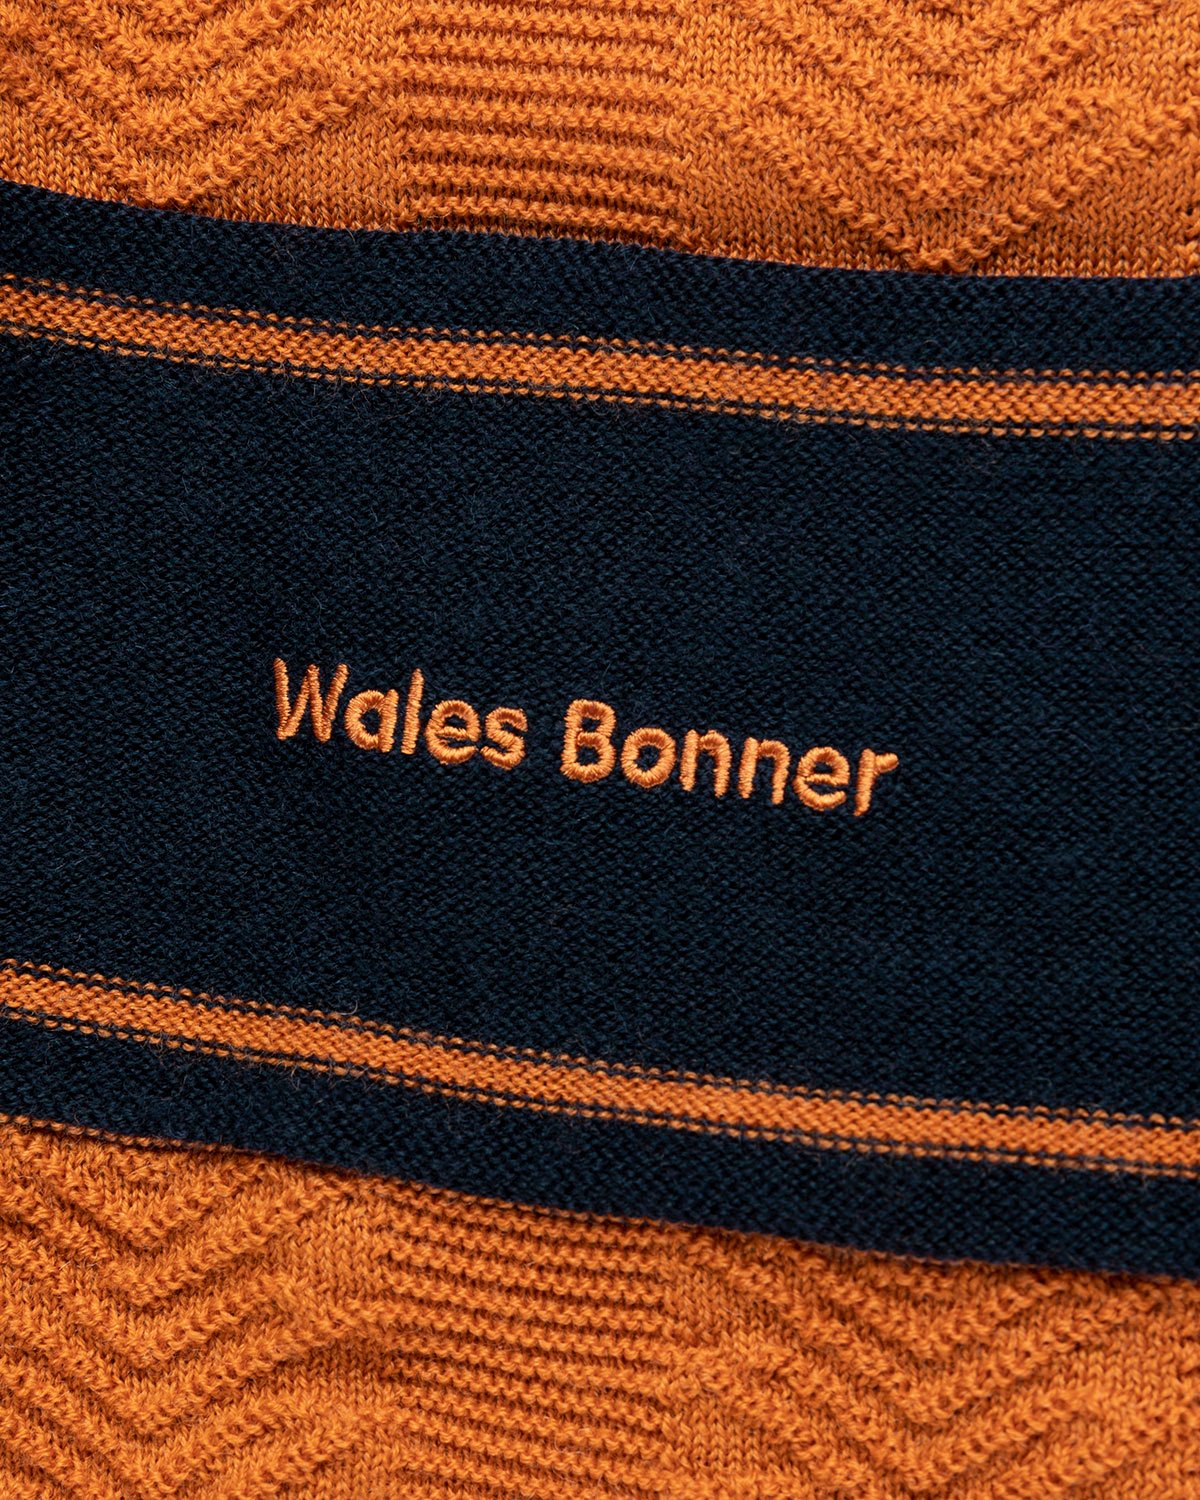 Adidas x Wales Bonner - Knit Longsleeve - Clothing - Orange - Image 6